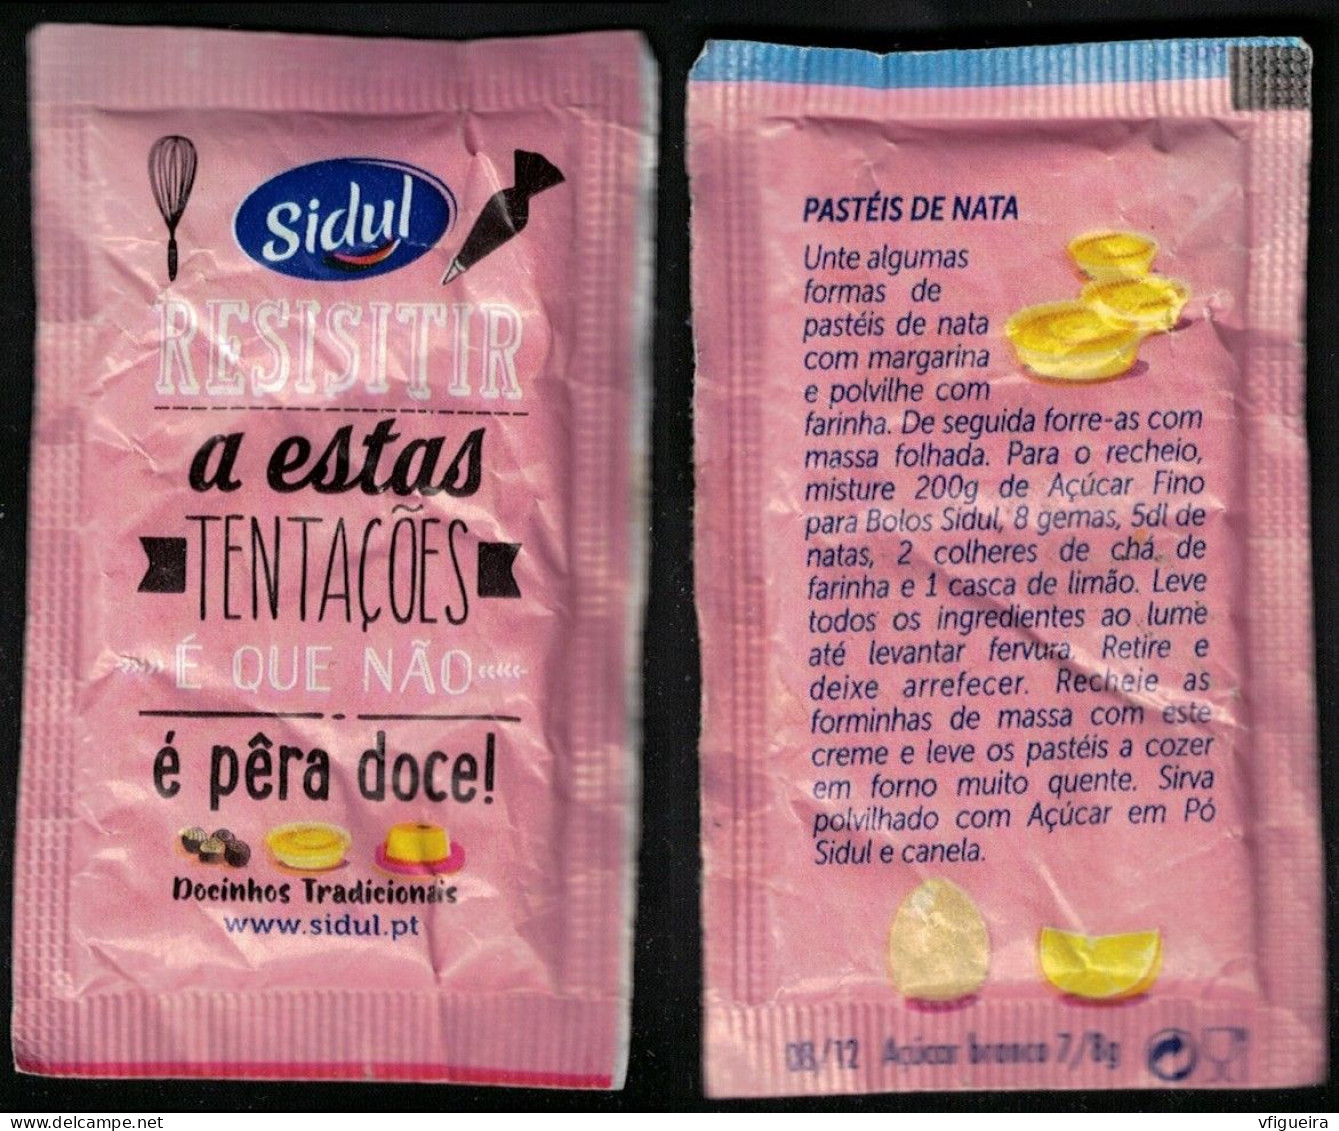 Portugal Sachet Sucre Sugar Bag Sidul Resistir A Estas Tentações é Que Não é Pêra Doce Pastéis De Nata - Suiker